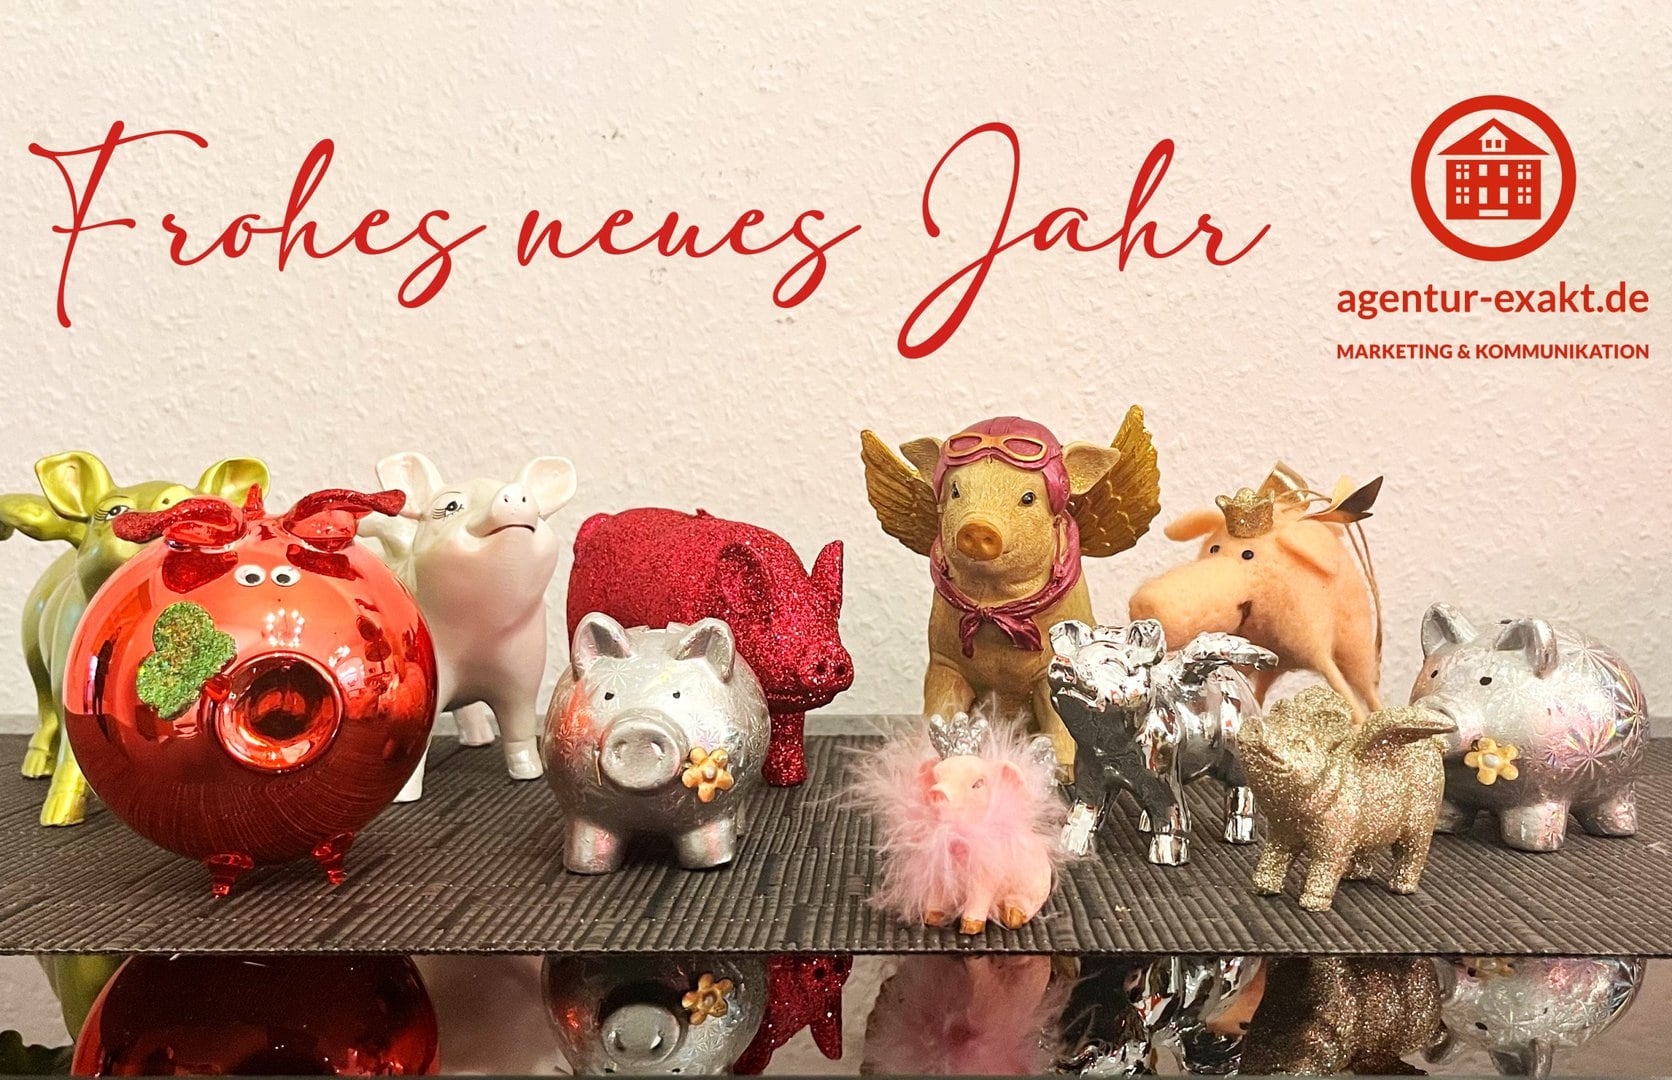 Kleine Deko-Schweine und ein Plüschschwein auf einem Tisch mit „Frohes neues Jahr“-Schriftzug und „agentur-exakt.de“-Logo im Hintergrund.